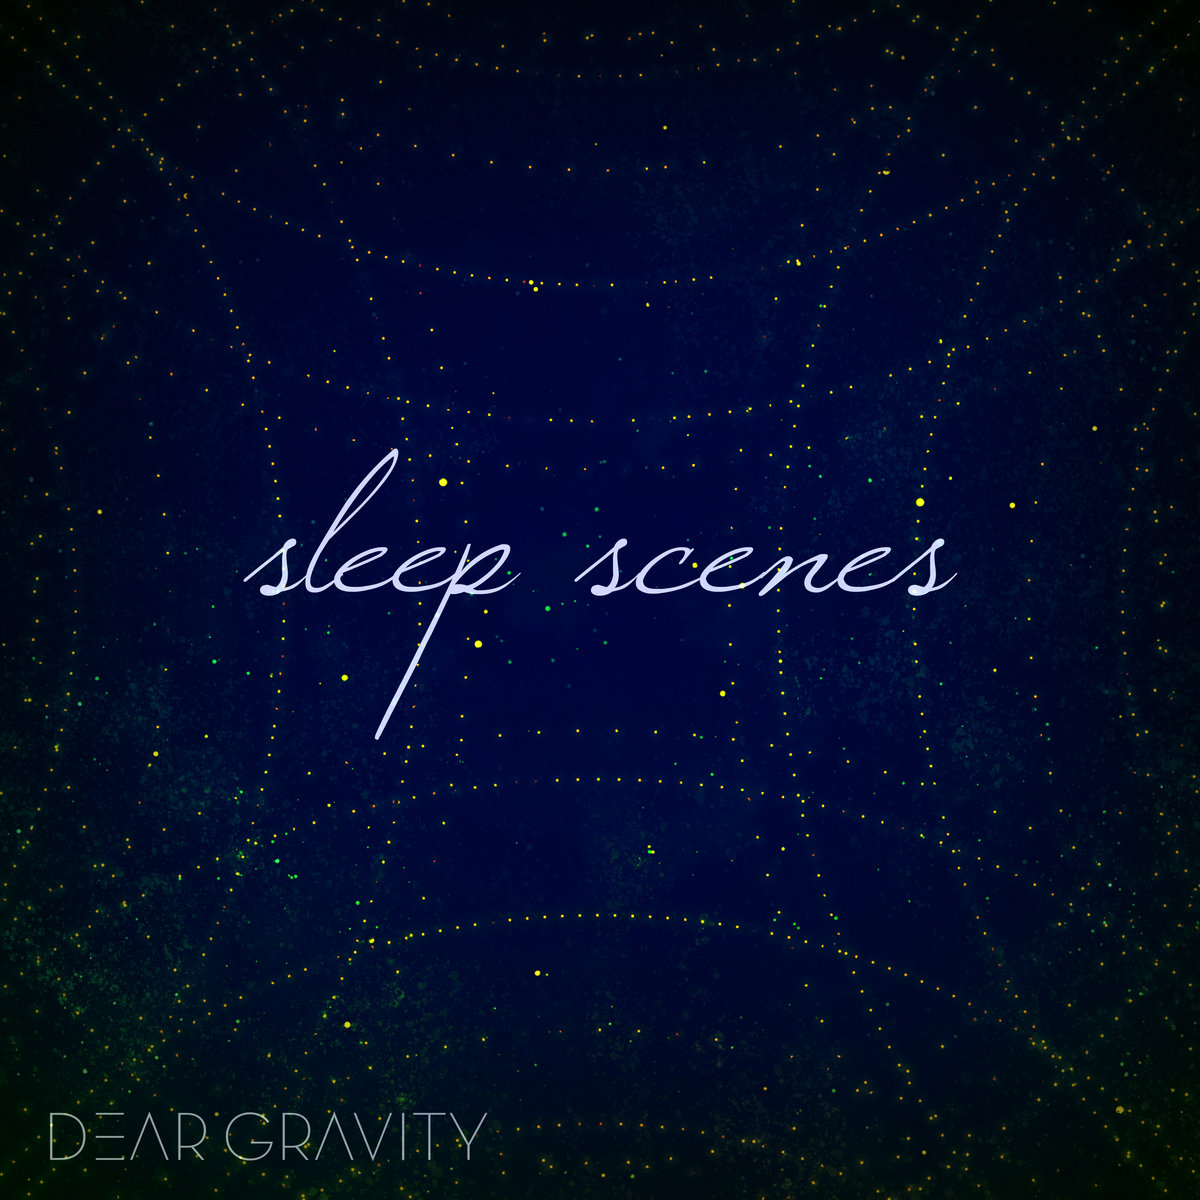 دانلود آلبوم موسیقی Sleep Scenes توسط Dear Gravity